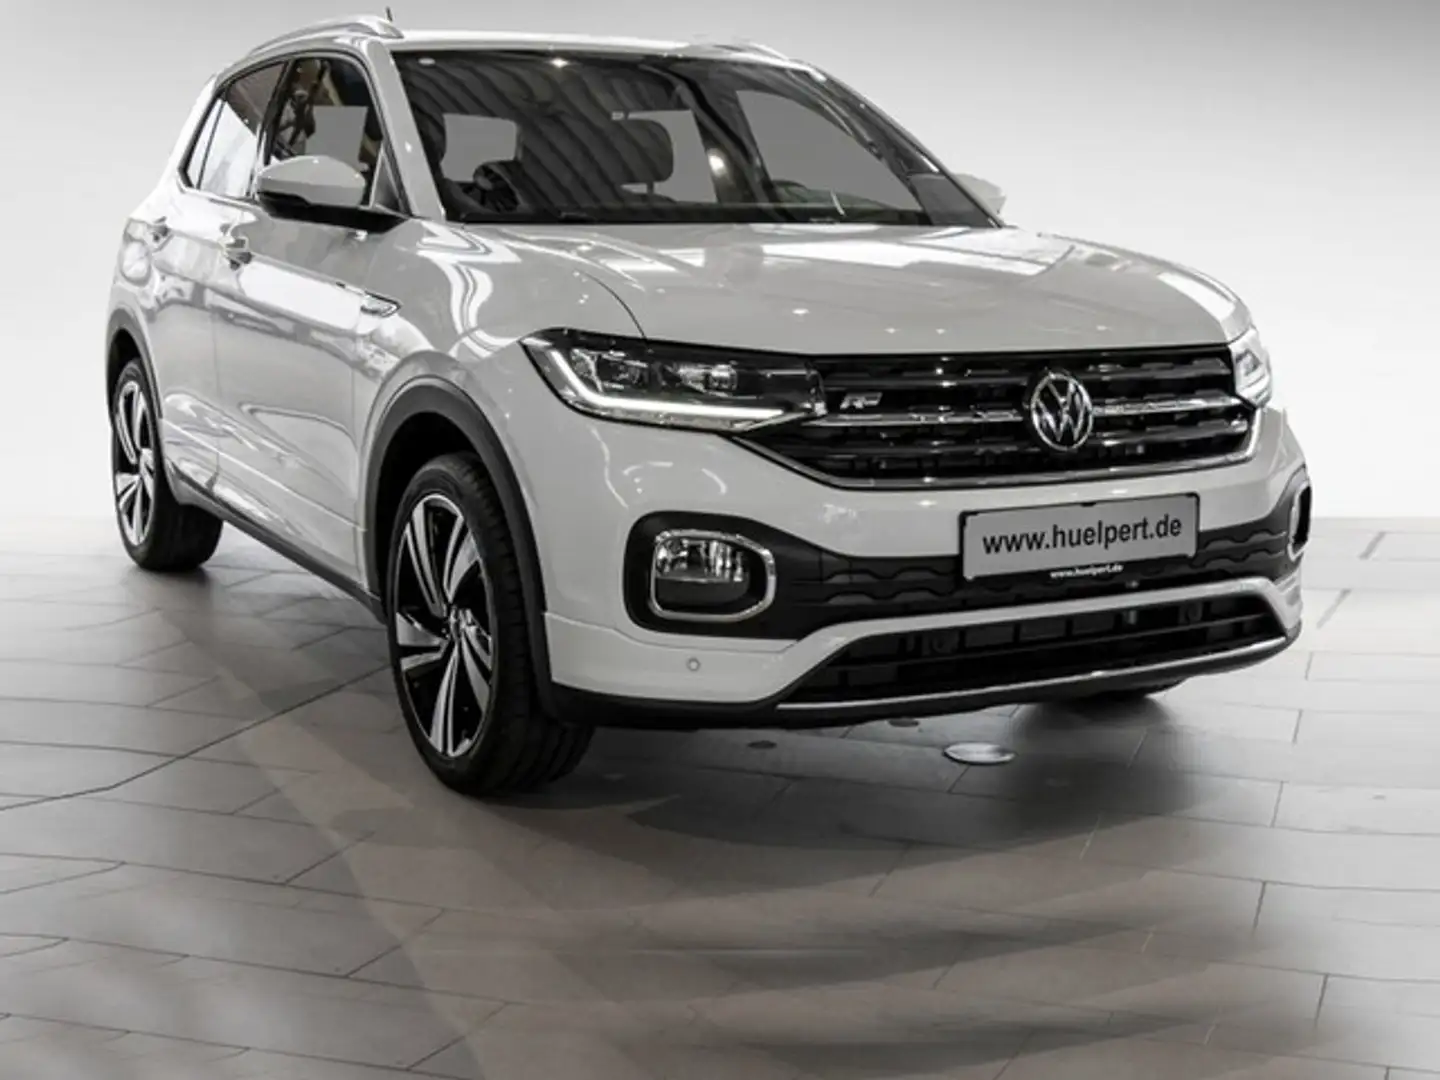 Volkswagen T-Cross SUV/Geländewagen/Pickup in Weiß neu in Dortmund für €  343,- mtl. im Leasing